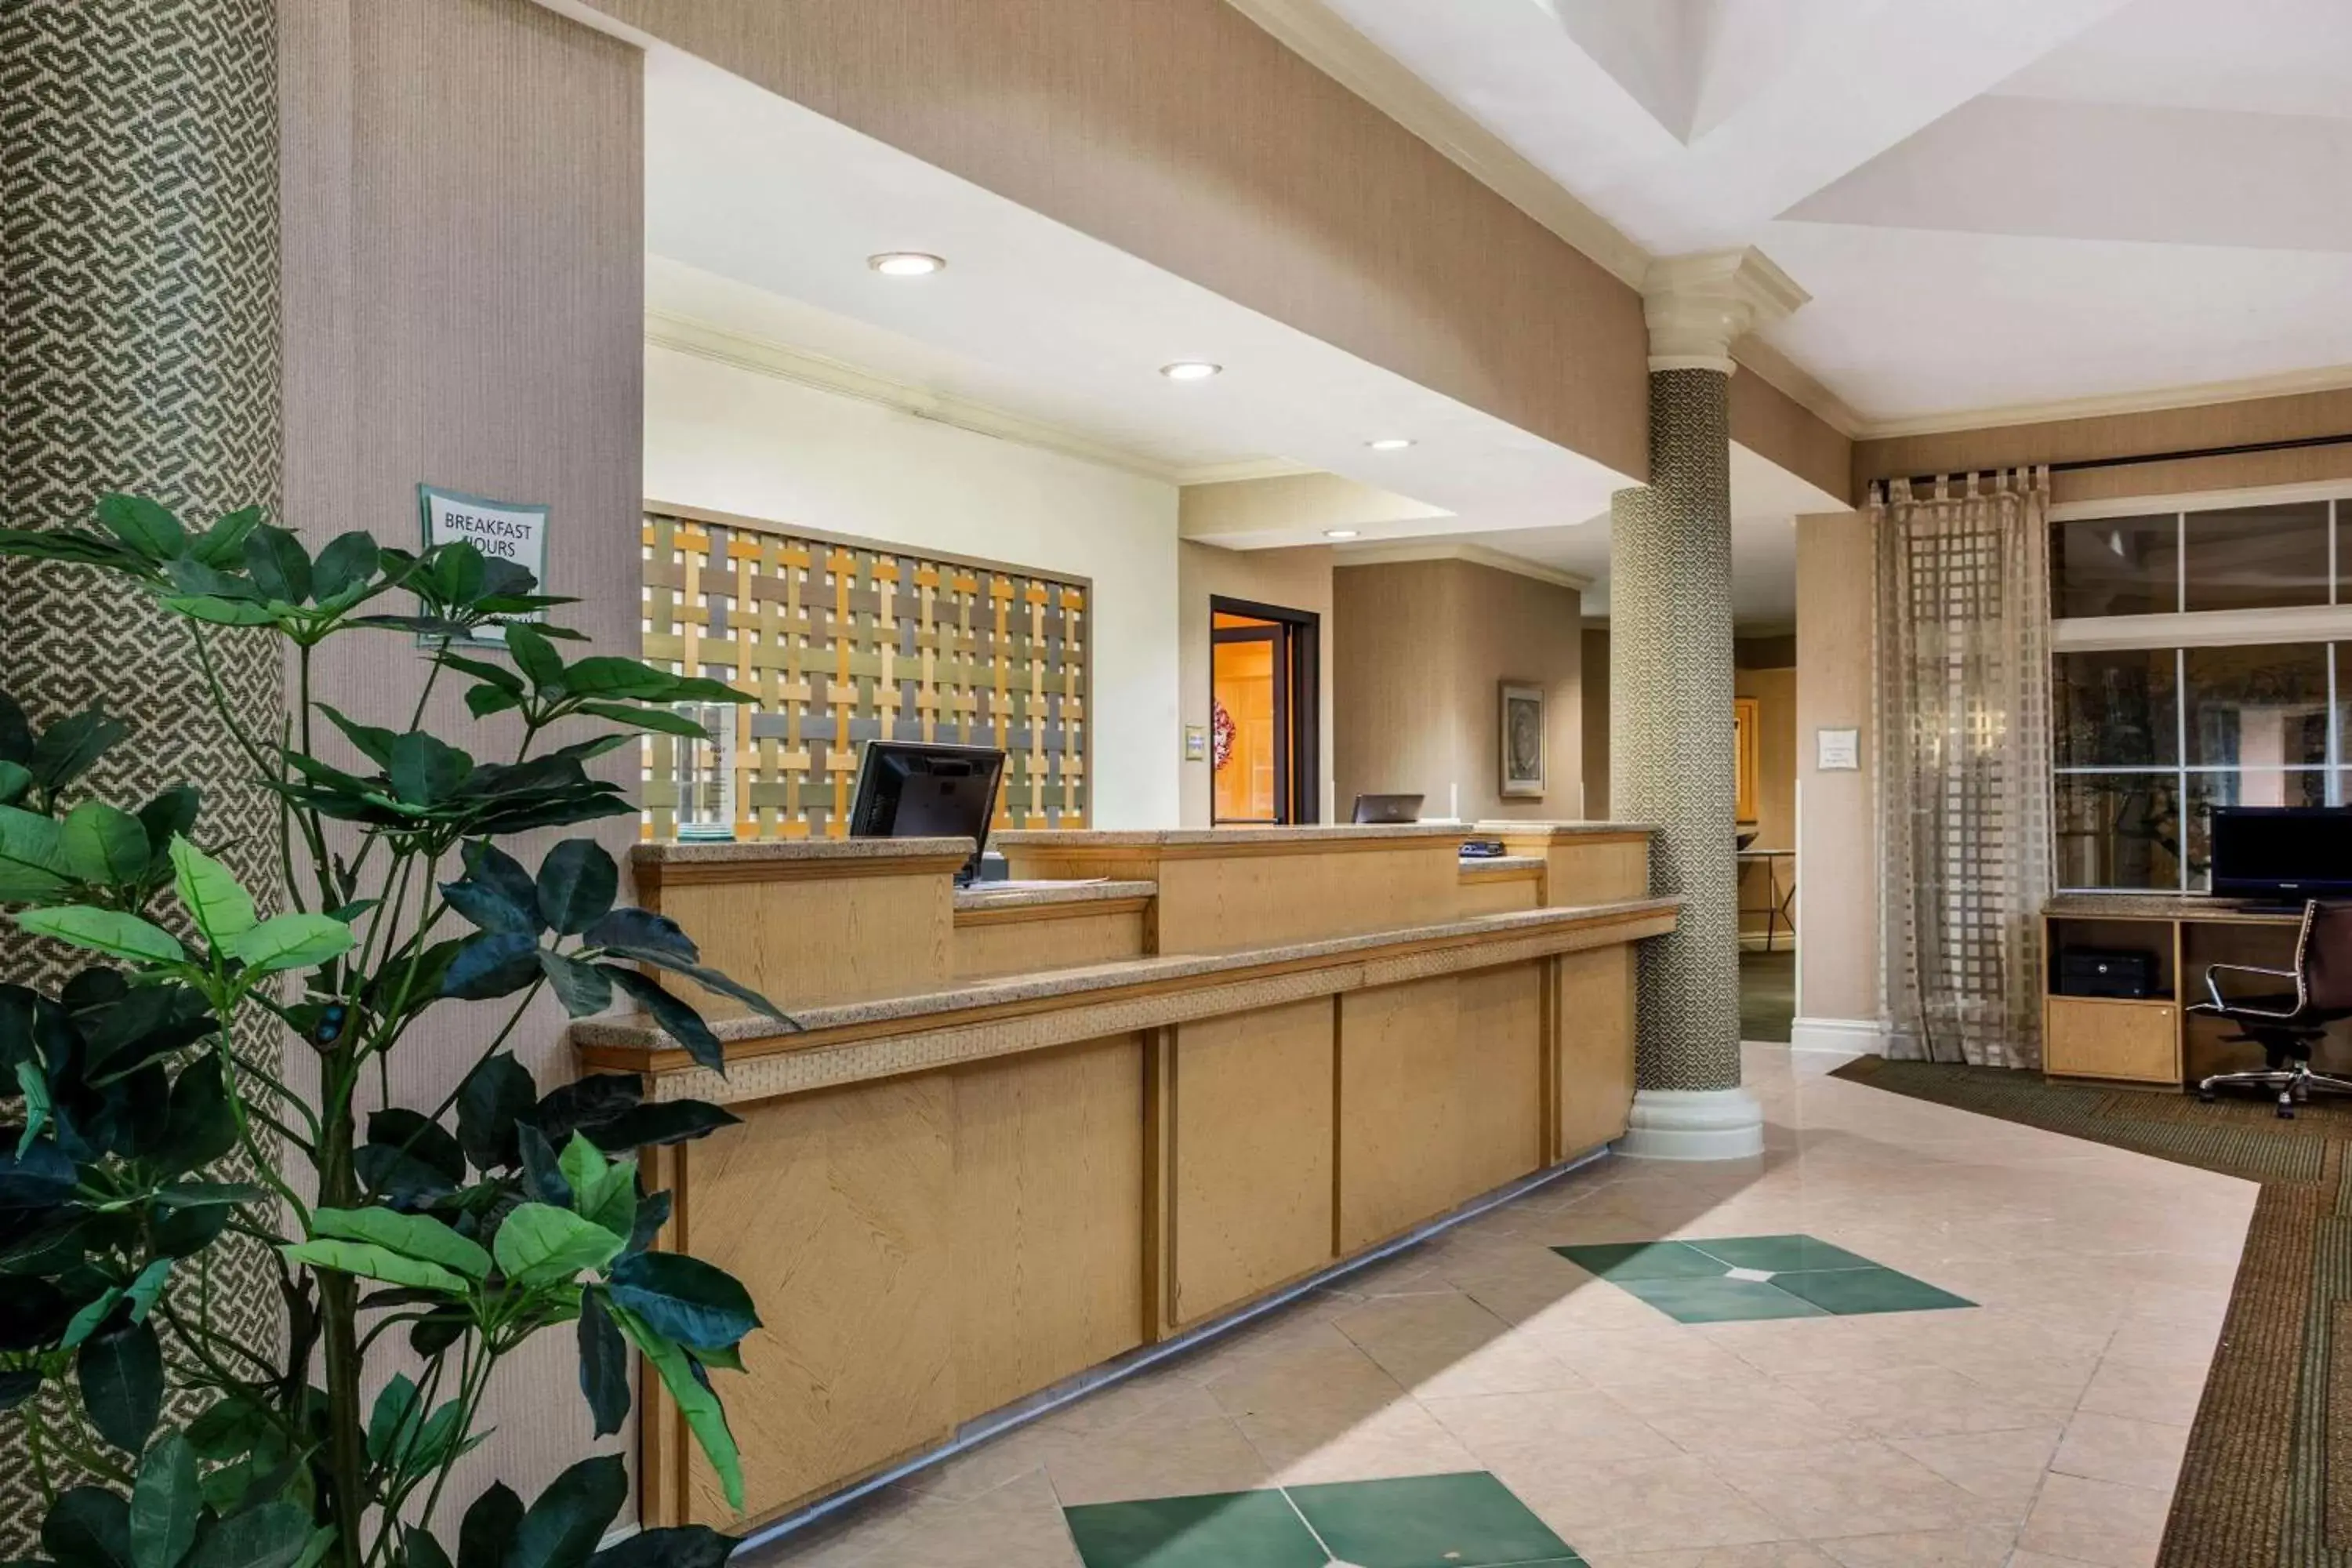 Lobby or reception, Lobby/Reception in La Quinta by Wyndham Greensboro NC